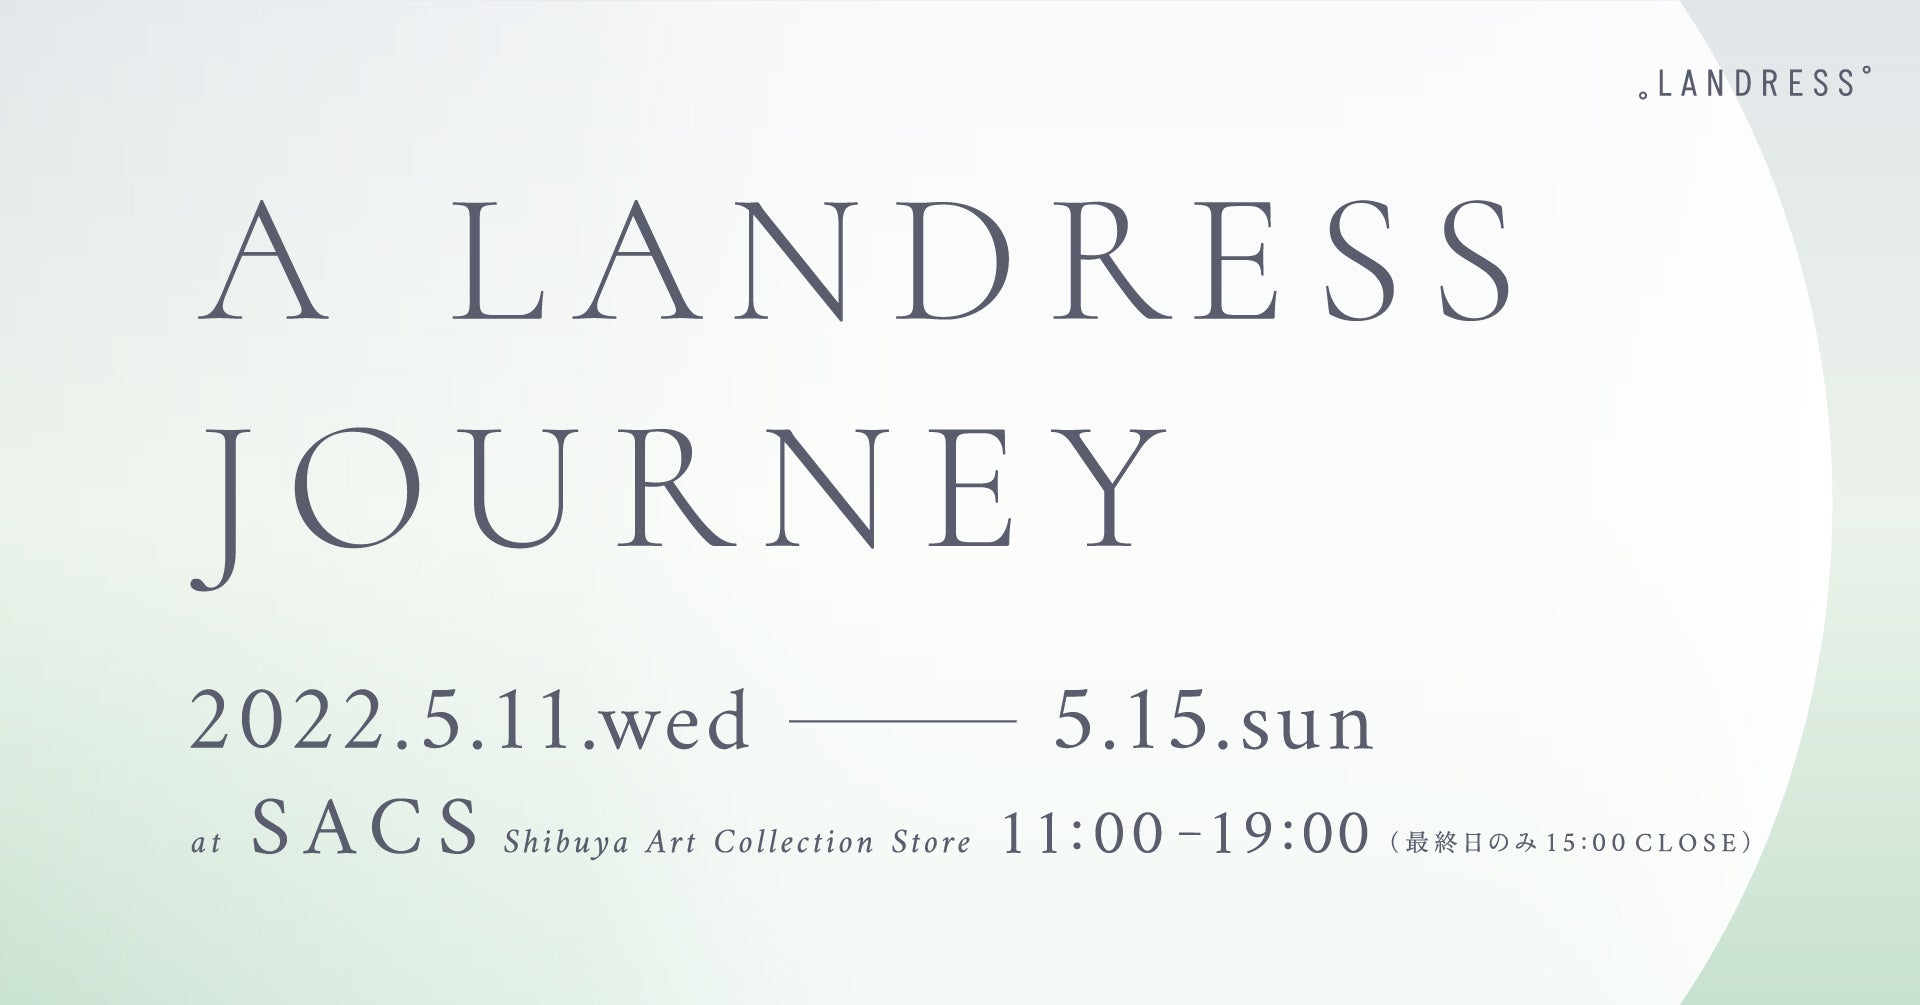 「自然と繋がり存在を祝う 究極の絶景ウェディング」-ウェディングを通して日本の魅力を世界へ- 新プロデュース会社LANDRESS初の展示会イベント開催！